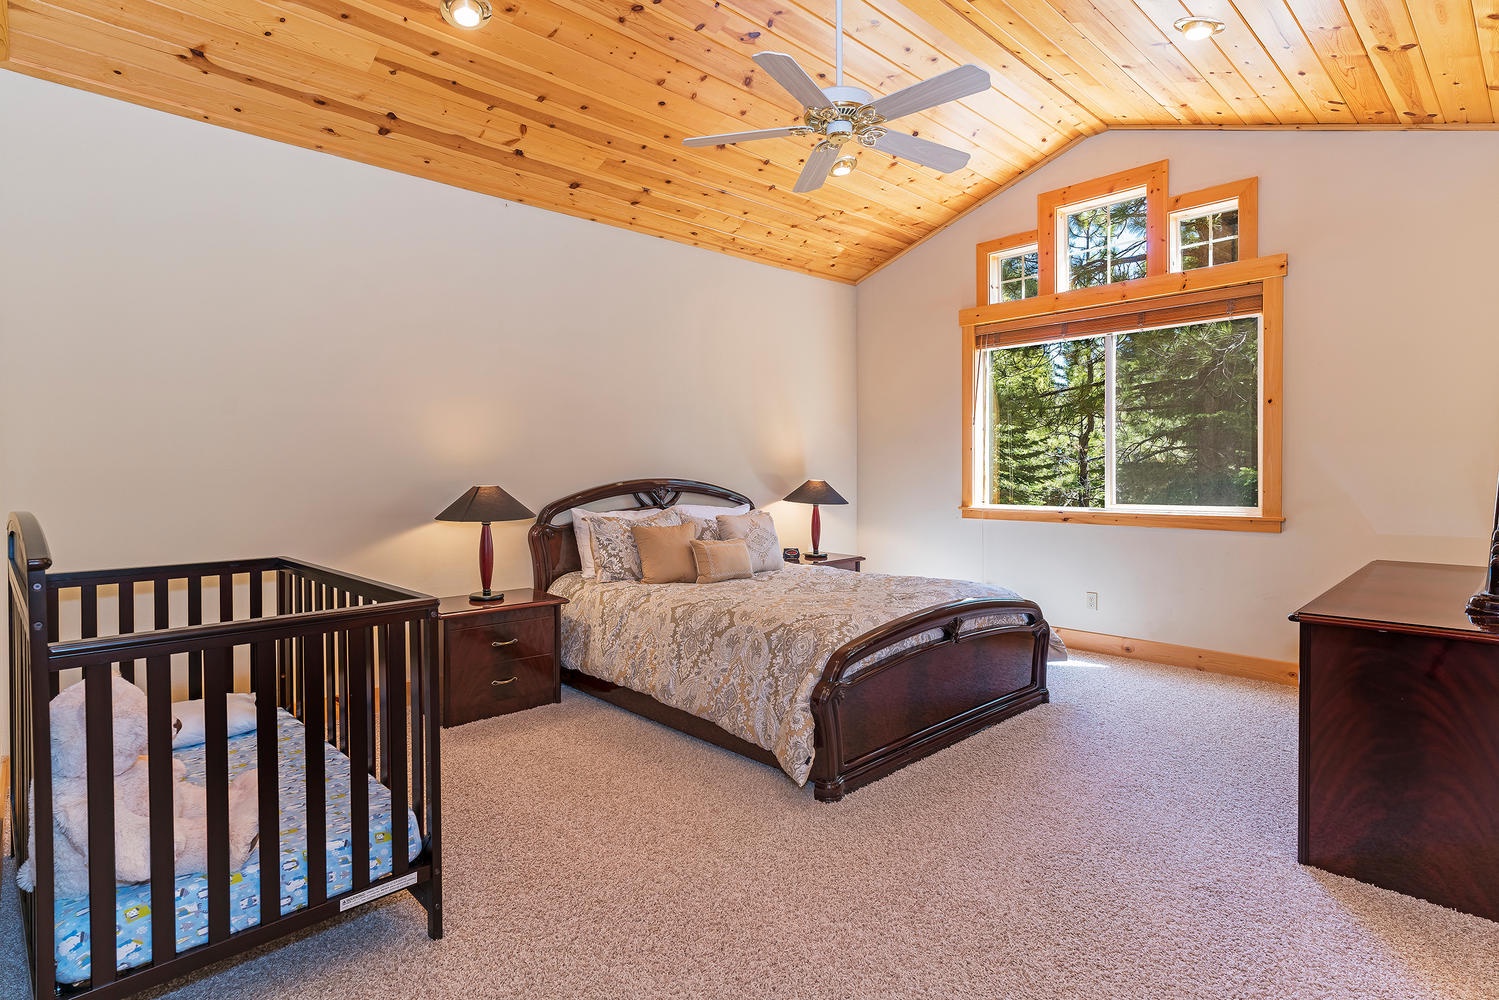 Master bedroom: Queen bed and crib (2nd floor)